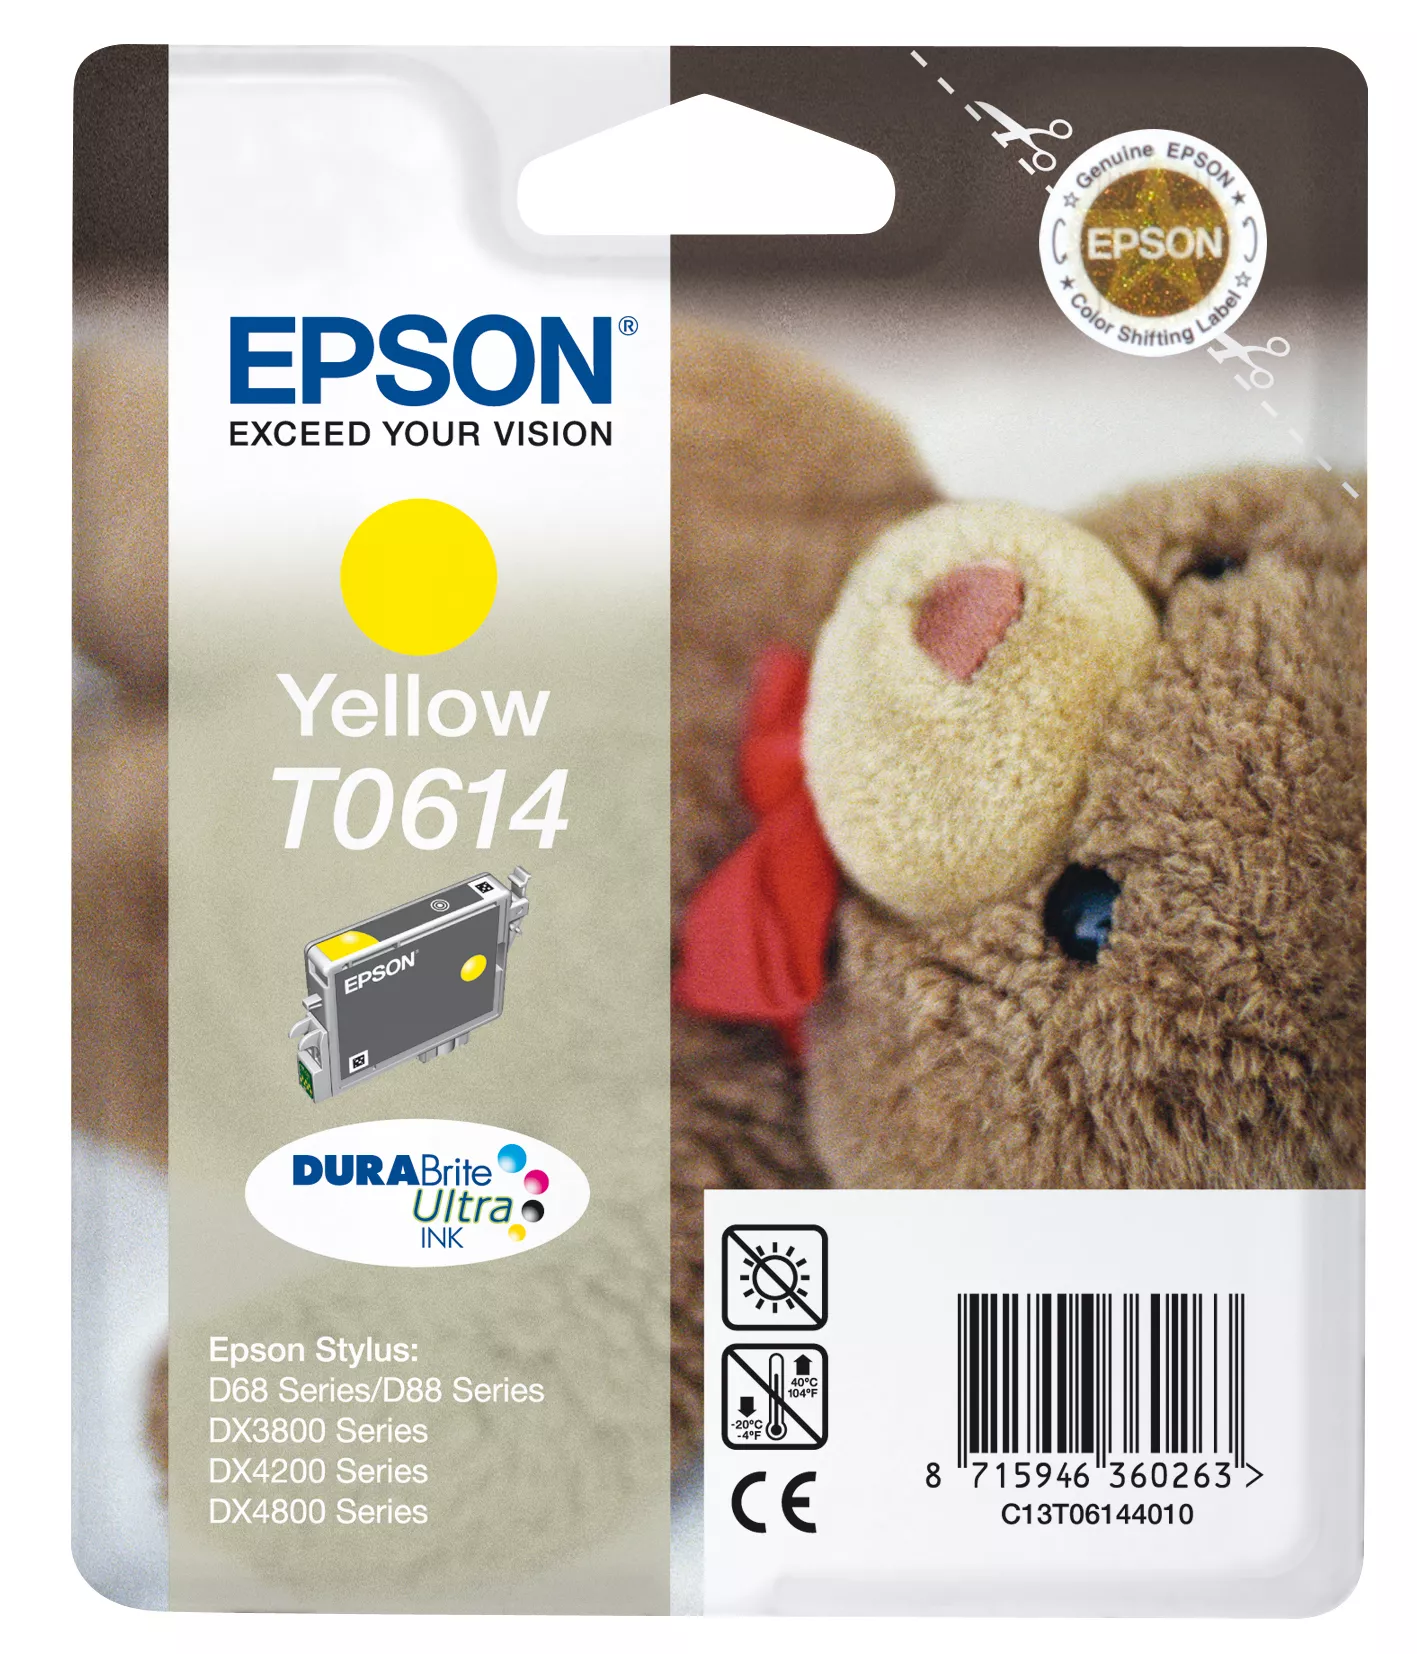 Vente EPSON T0614 cartouche d encre jaune capacité standard Epson au meilleur prix - visuel 2